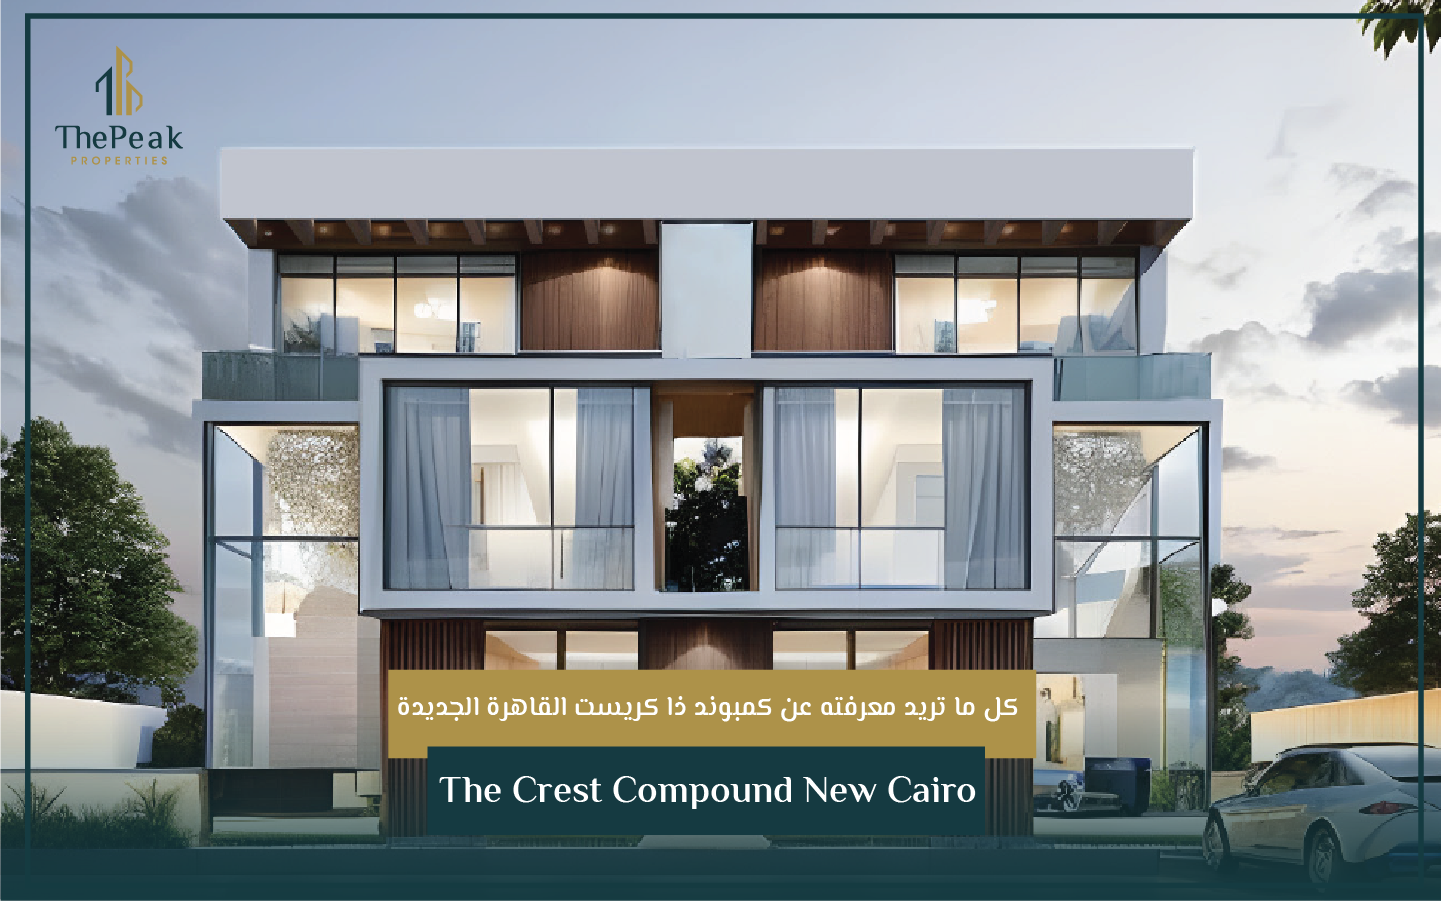 دوبلكس علوي  للبيع بالتقسيط في التجمع الخامس  مساحة 160 متر  مقدم 5 % و تقسيط يصل إلي 7 سنوات  في مشروع The Crest Compound New Cairo | THE PEAK PROPERTIES